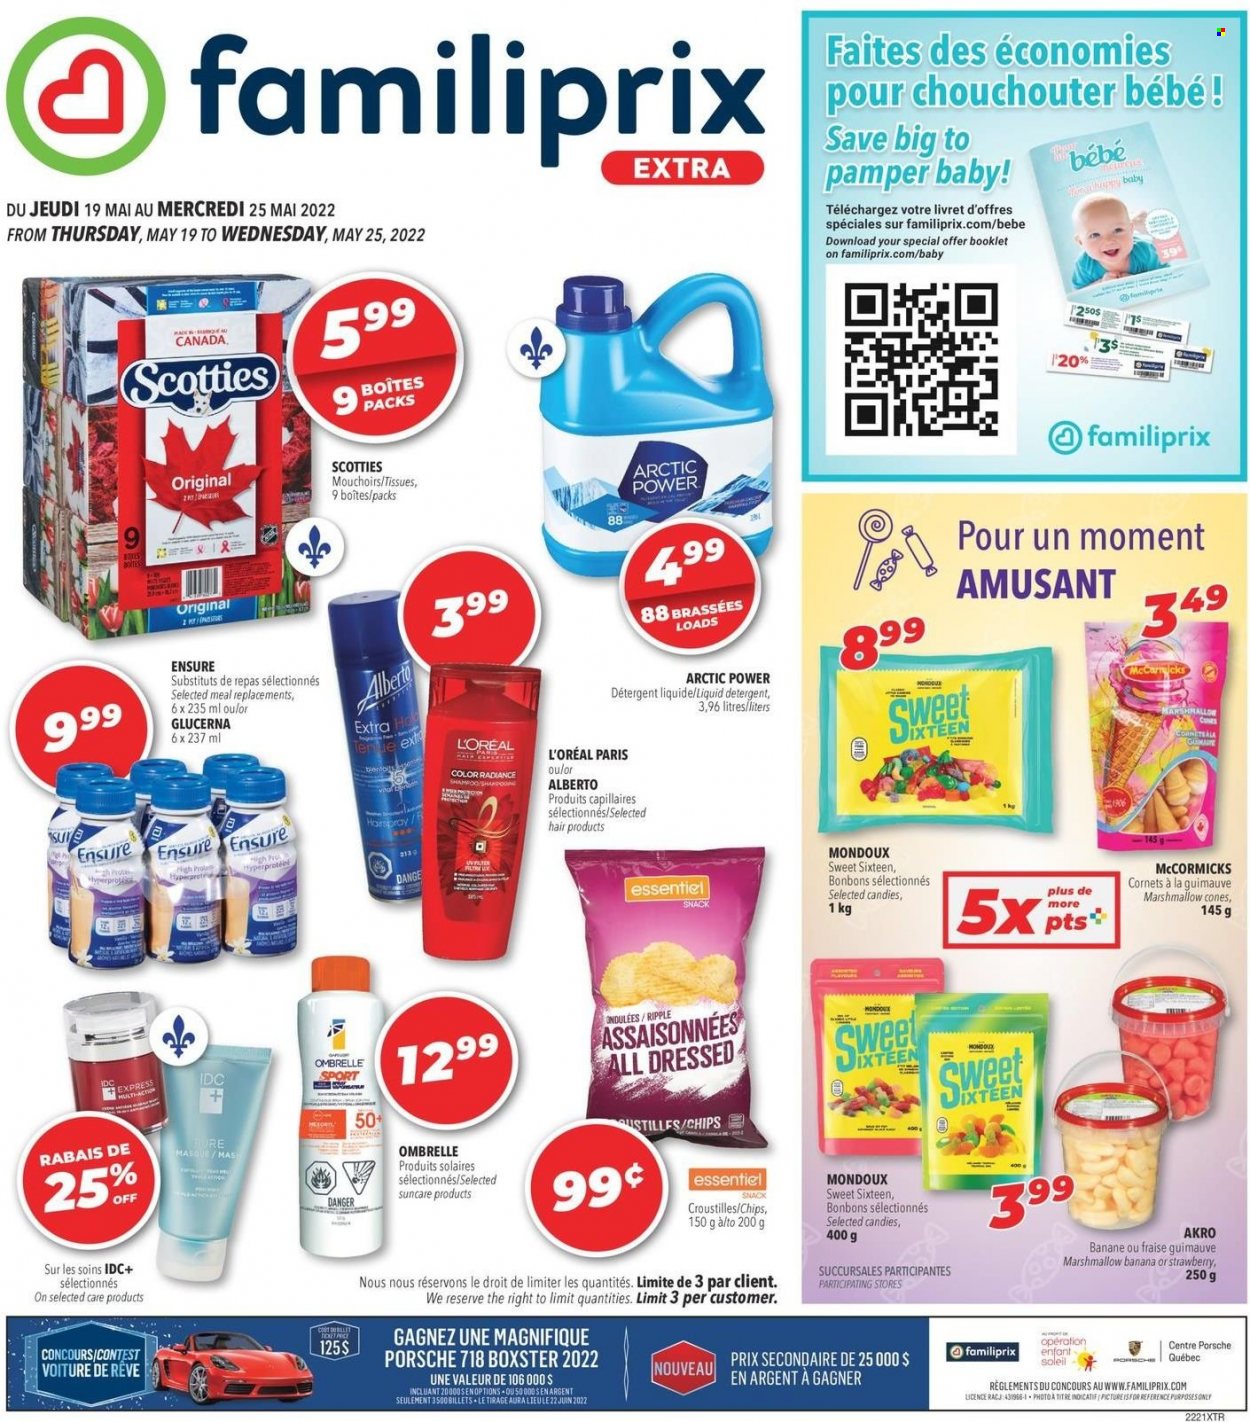 thumbnail - Circulaire Familiprix Extra - 19 Mai 2022 - 25 Mai 2022 - Produits soldés - bonbons, chips, bananes, mouchoirs, détergent, shampooing, L'Oréal. Page 1.